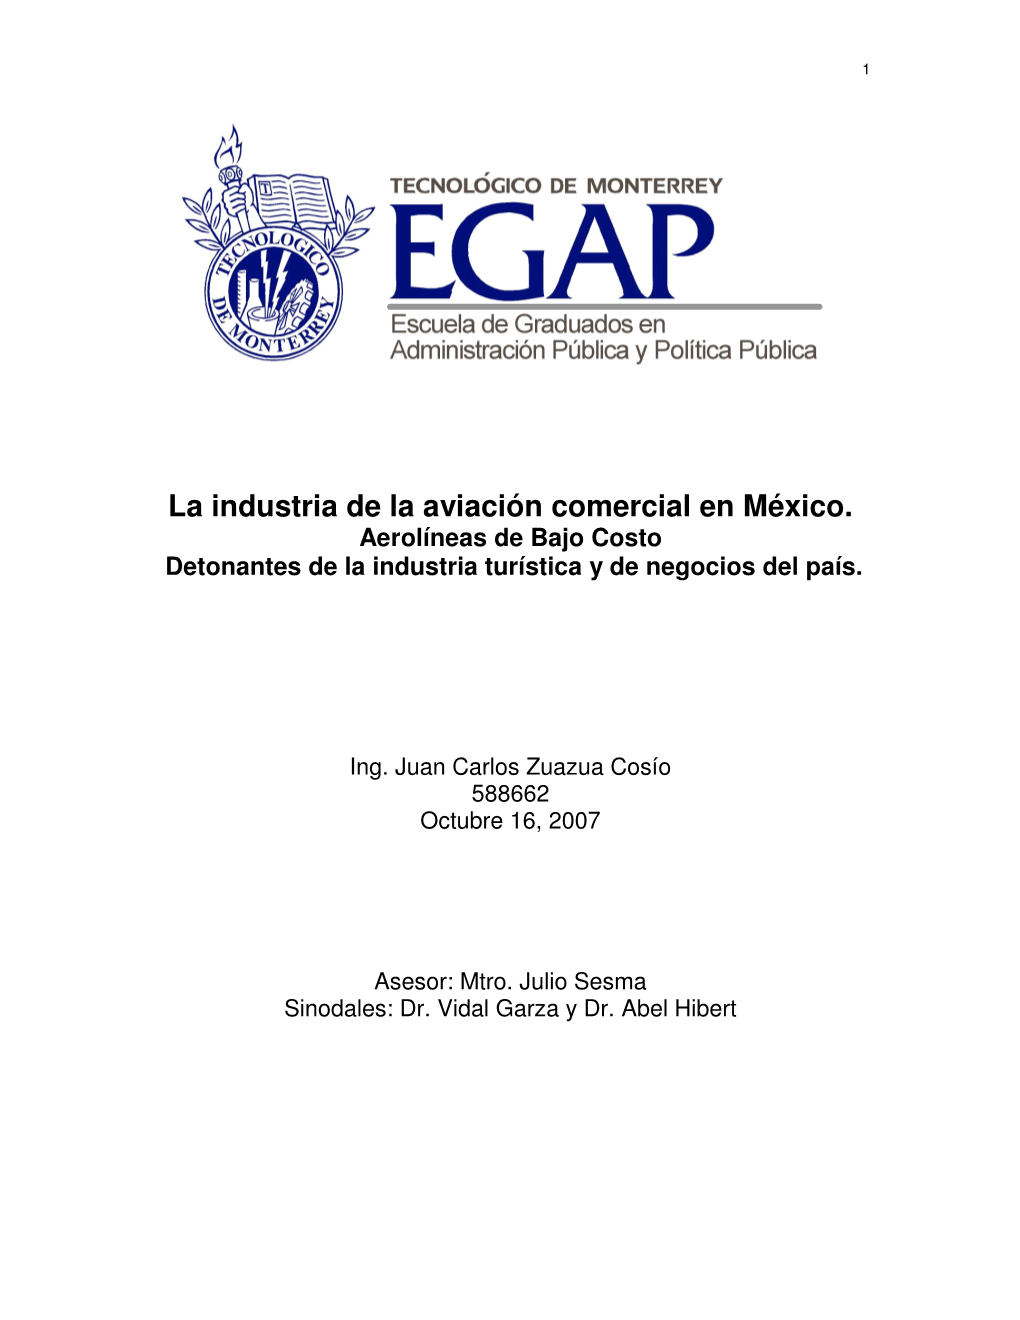 La Industria De La Aviación Comercial En México. Aerolíneas De Bajo Costo Detonantes De La Industria Turística Y De Negocios Del País